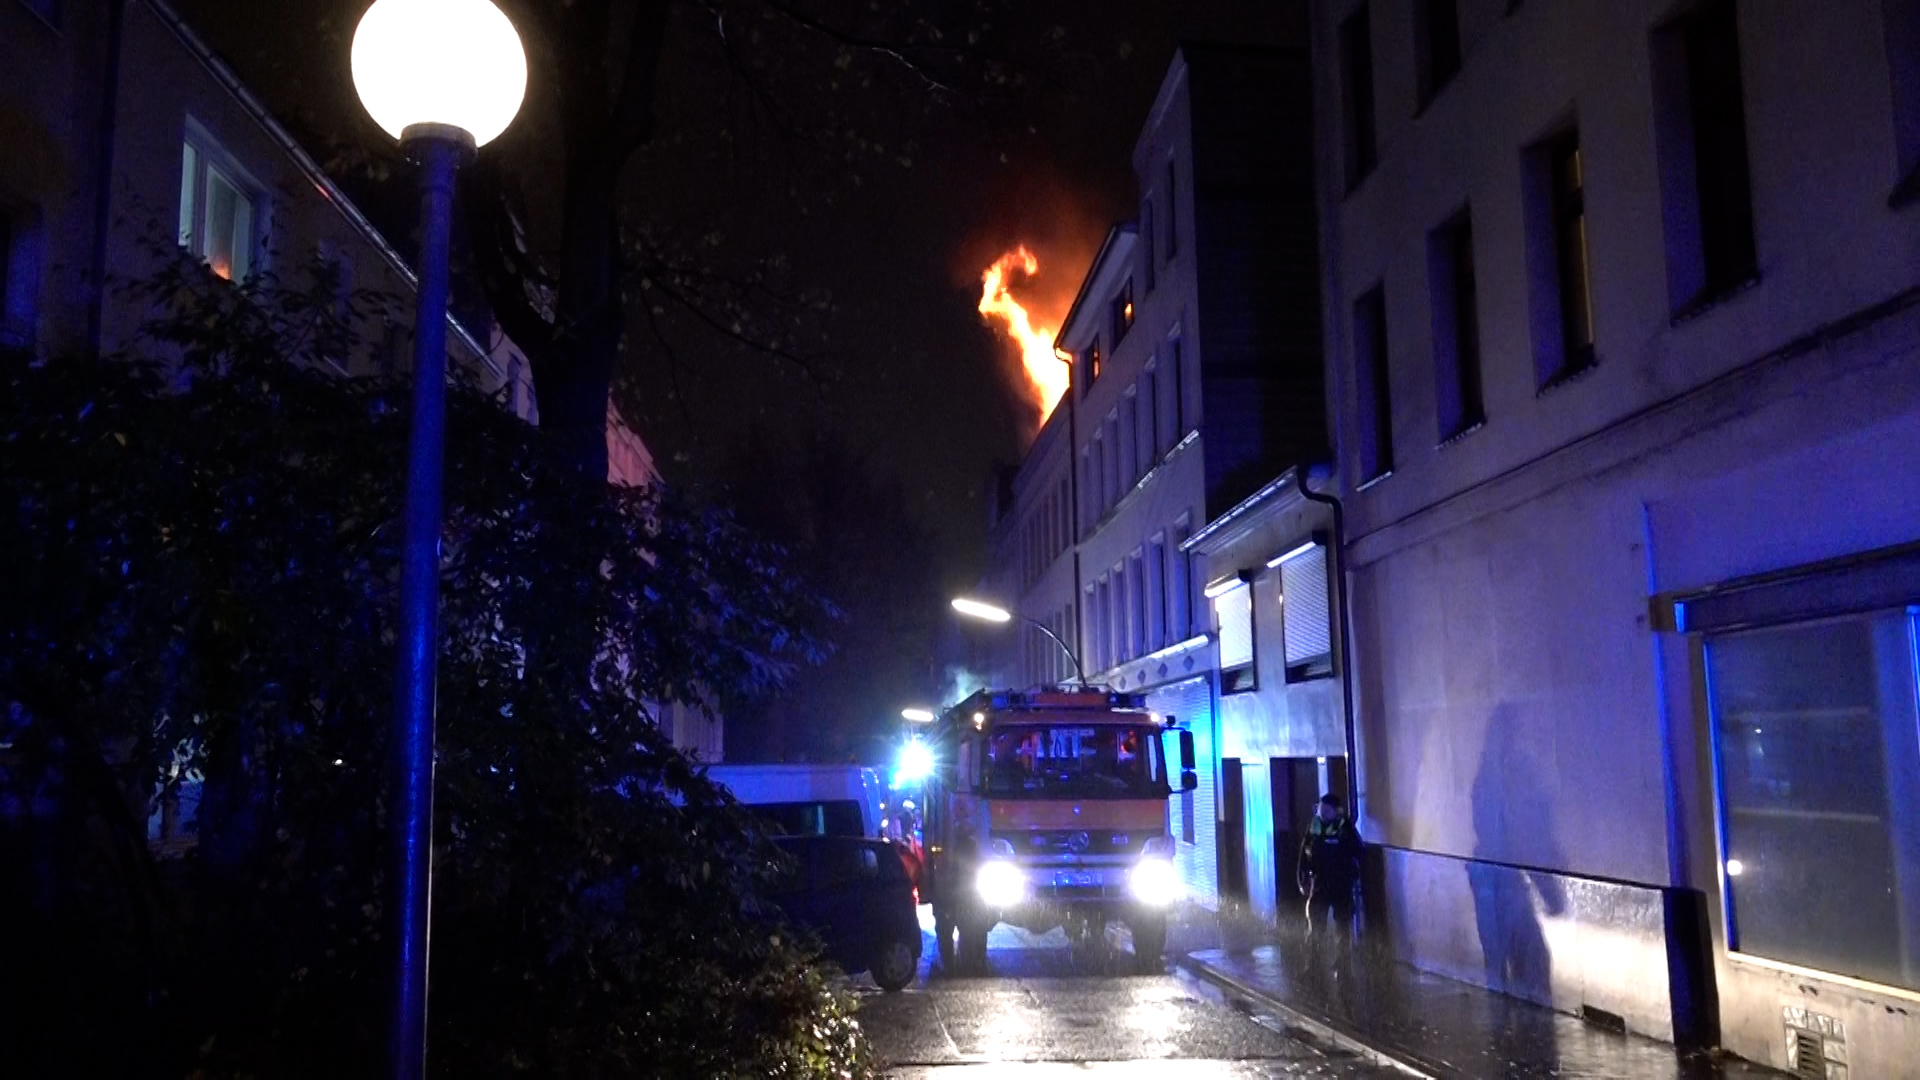 Dachtuhlbrand in Hamburg – Falschparker erschweren Feuerwehr die Anfahrt